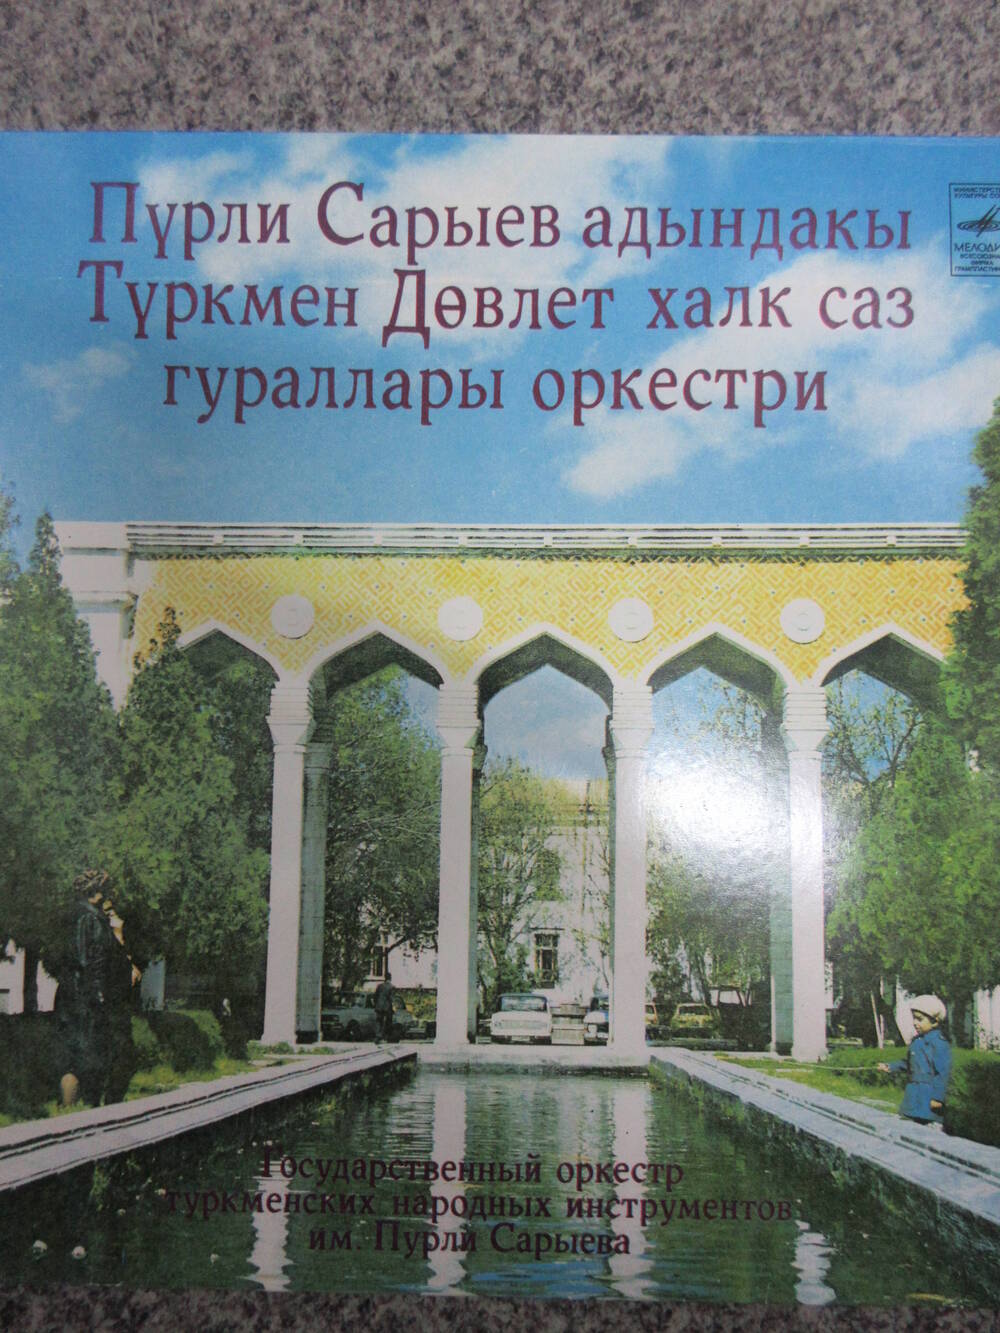 Пластинка Государственный оркестр туркменских народных инструментов имени Пурли Сарыева